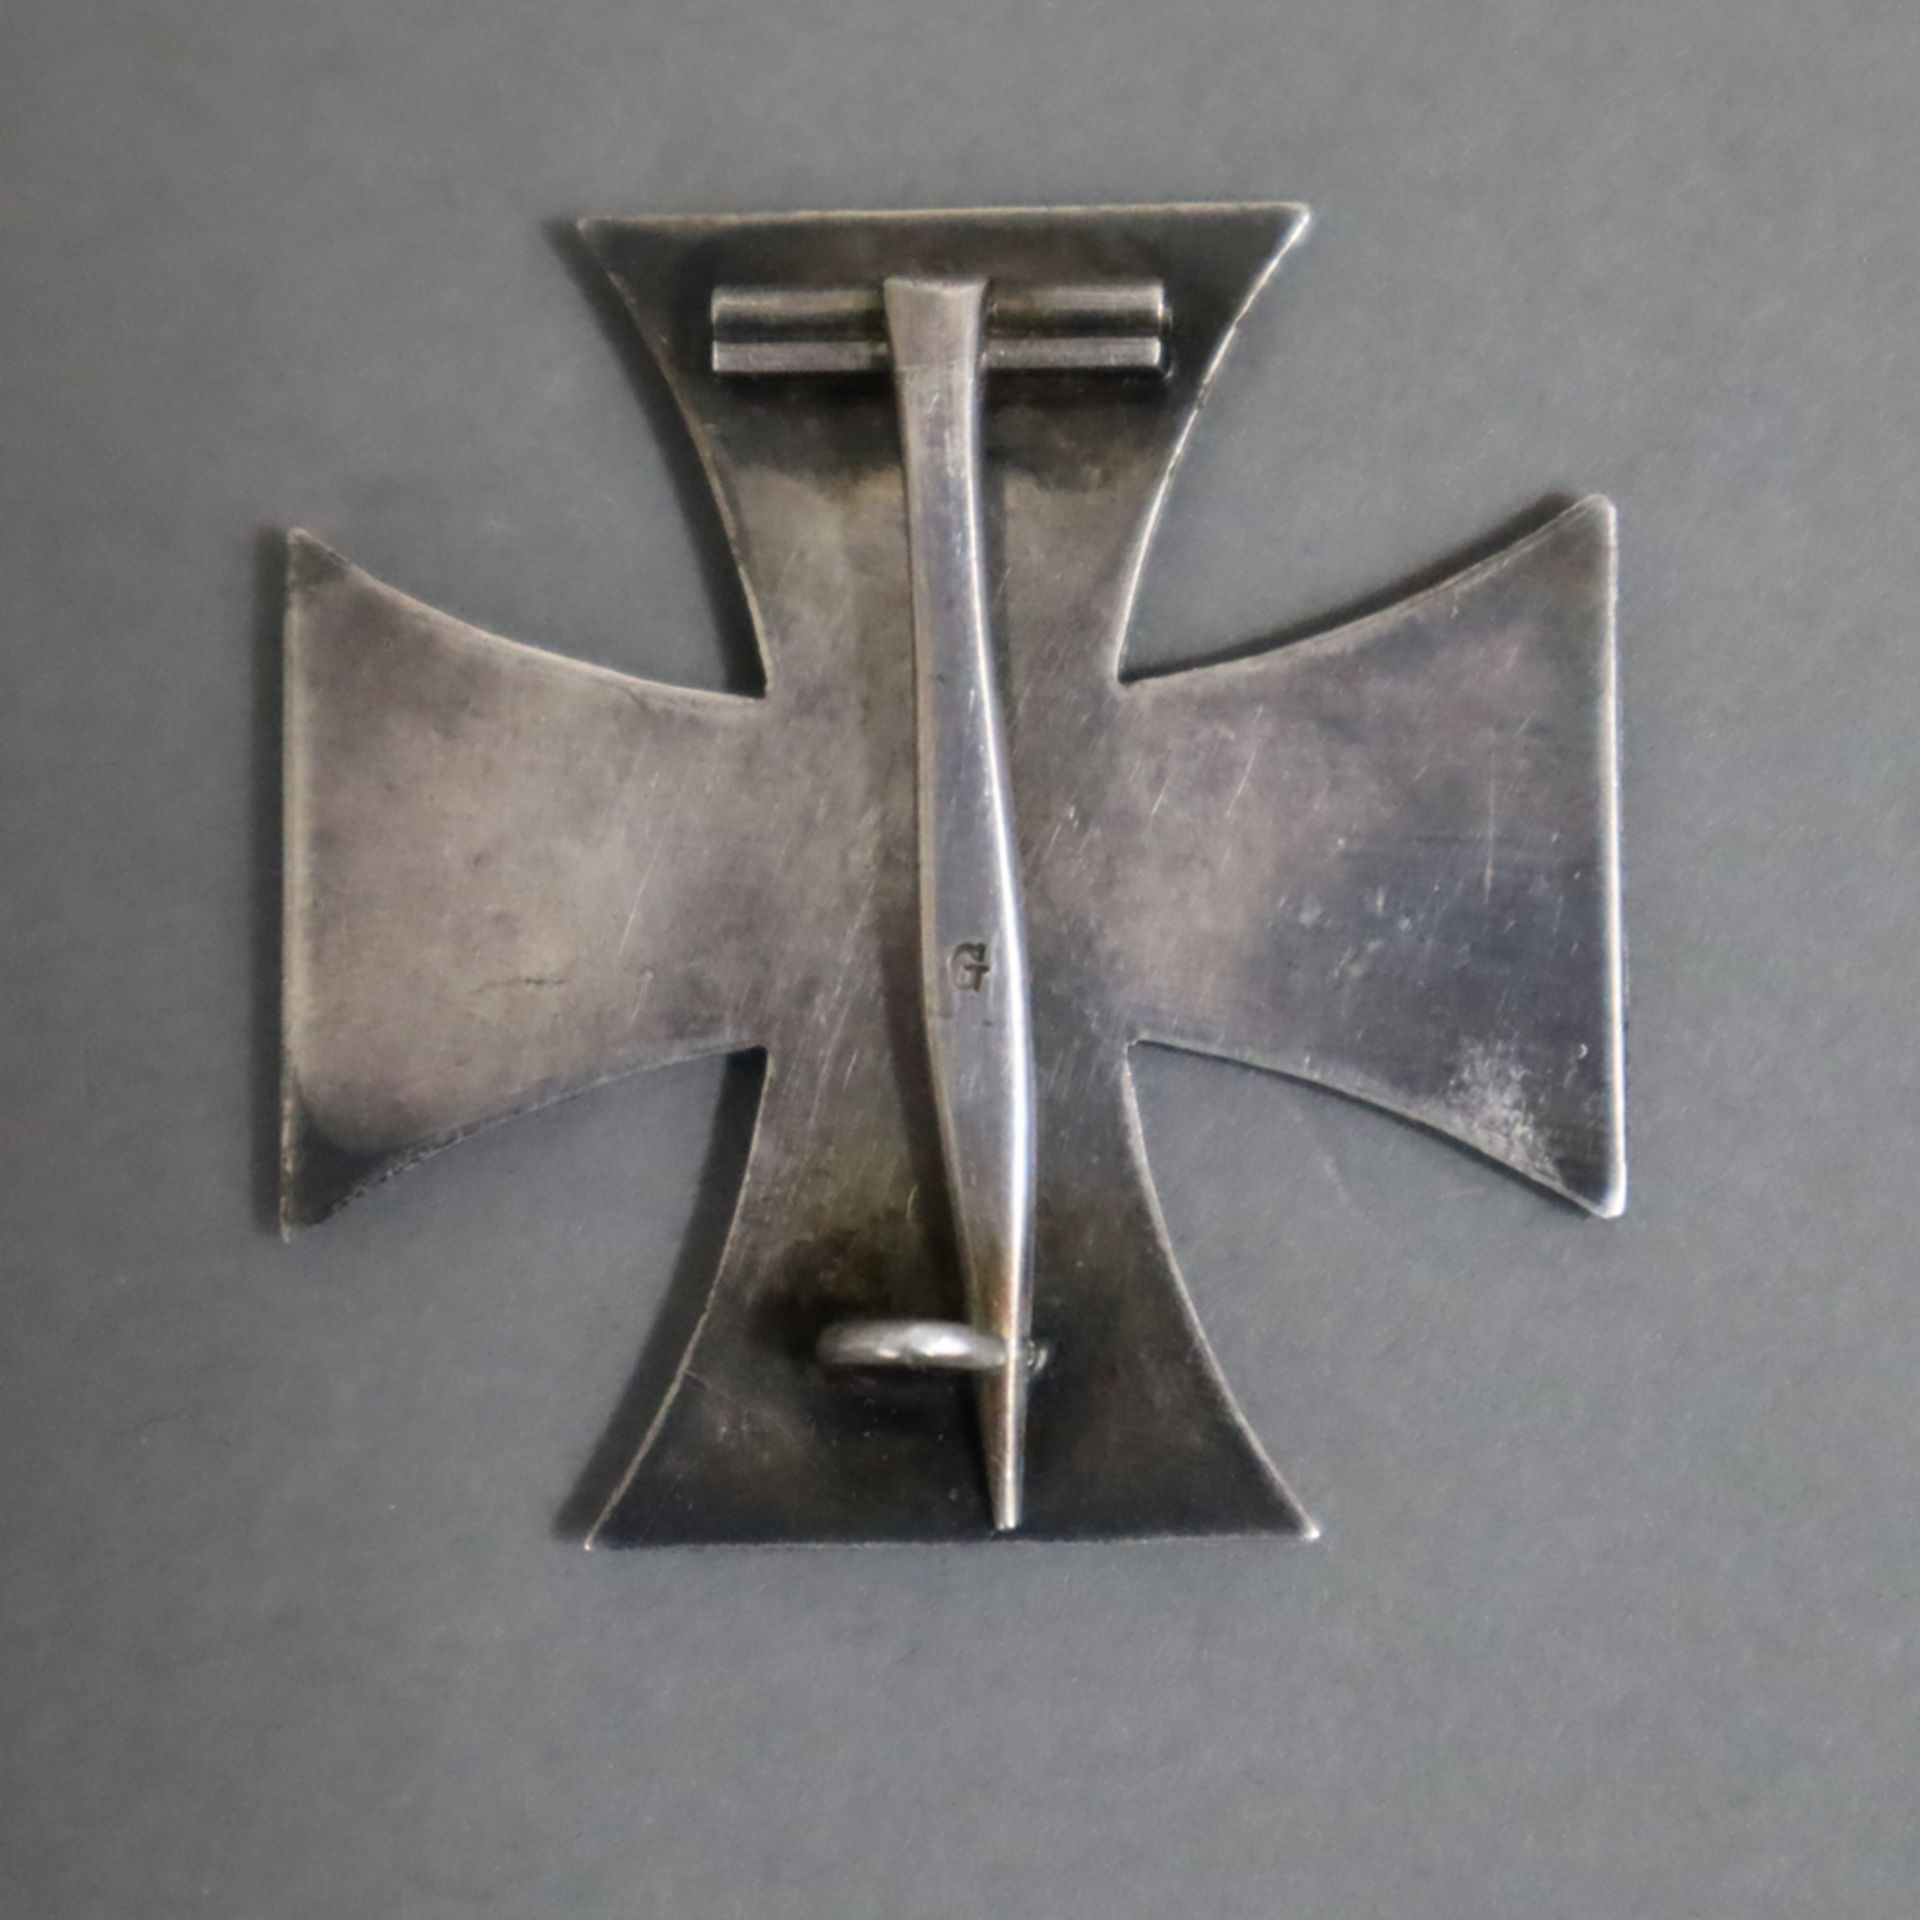 Zwei Ehrenzeichen - 1x Eisernes Kreuz WKI- 1914, Kaiserreich, Nadelhaken gestempelt "G", ca.4,2x4,2 - Bild 5 aus 5